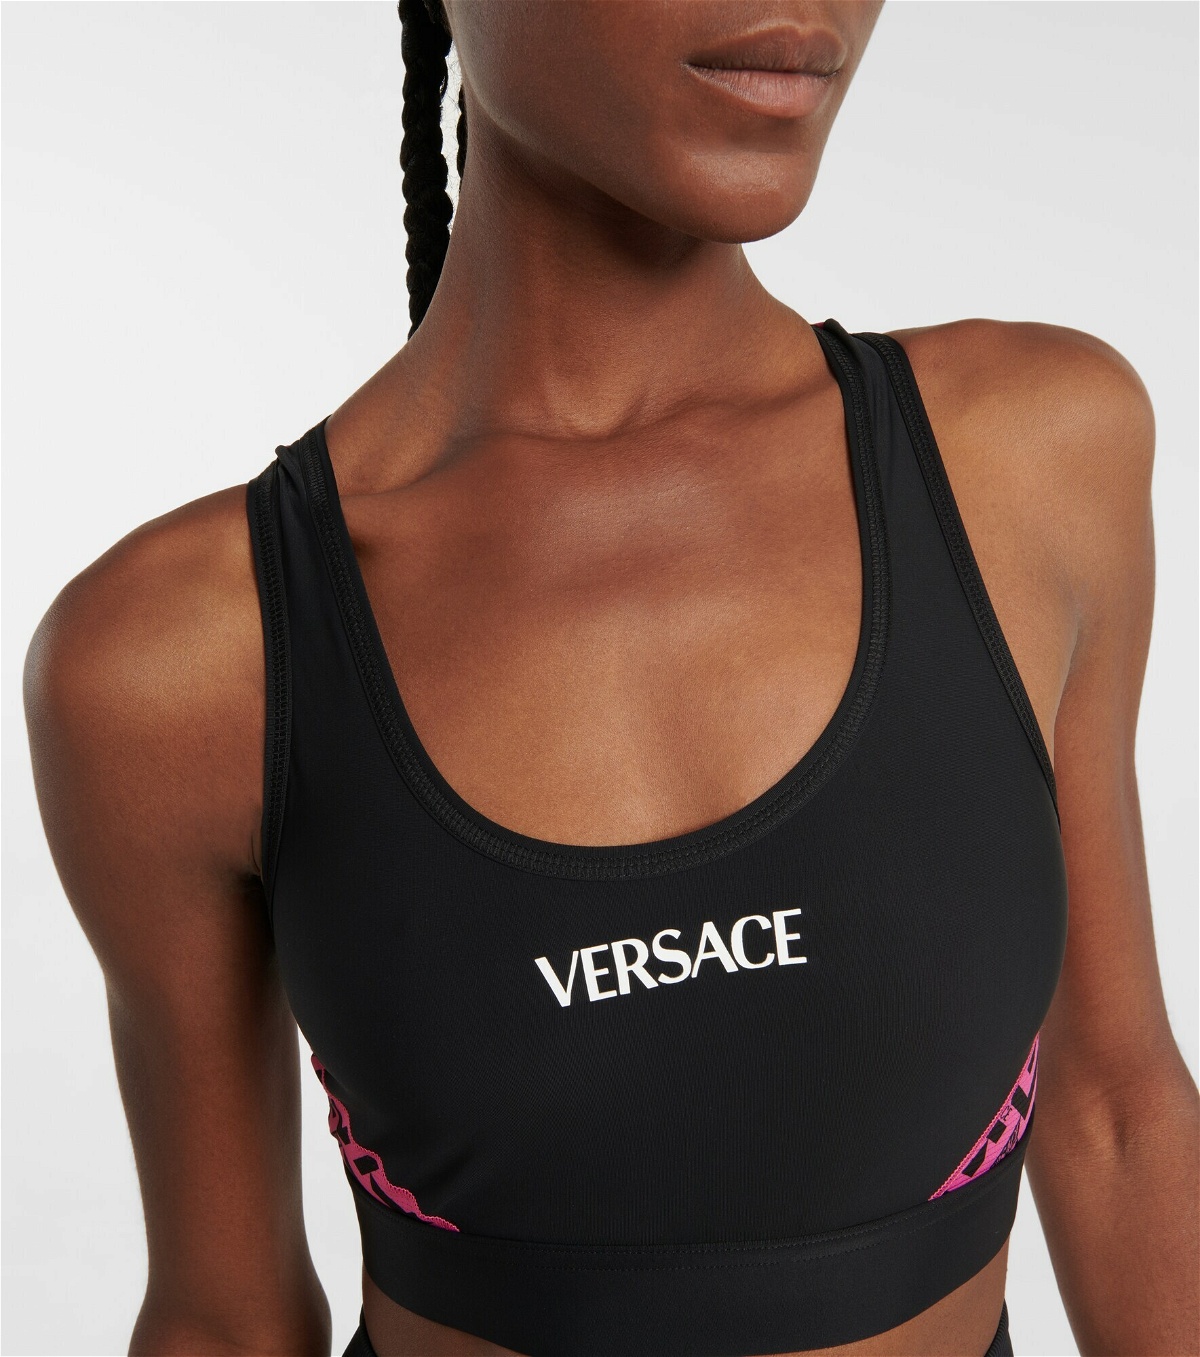 Greca cutout sports bra in black - Versace